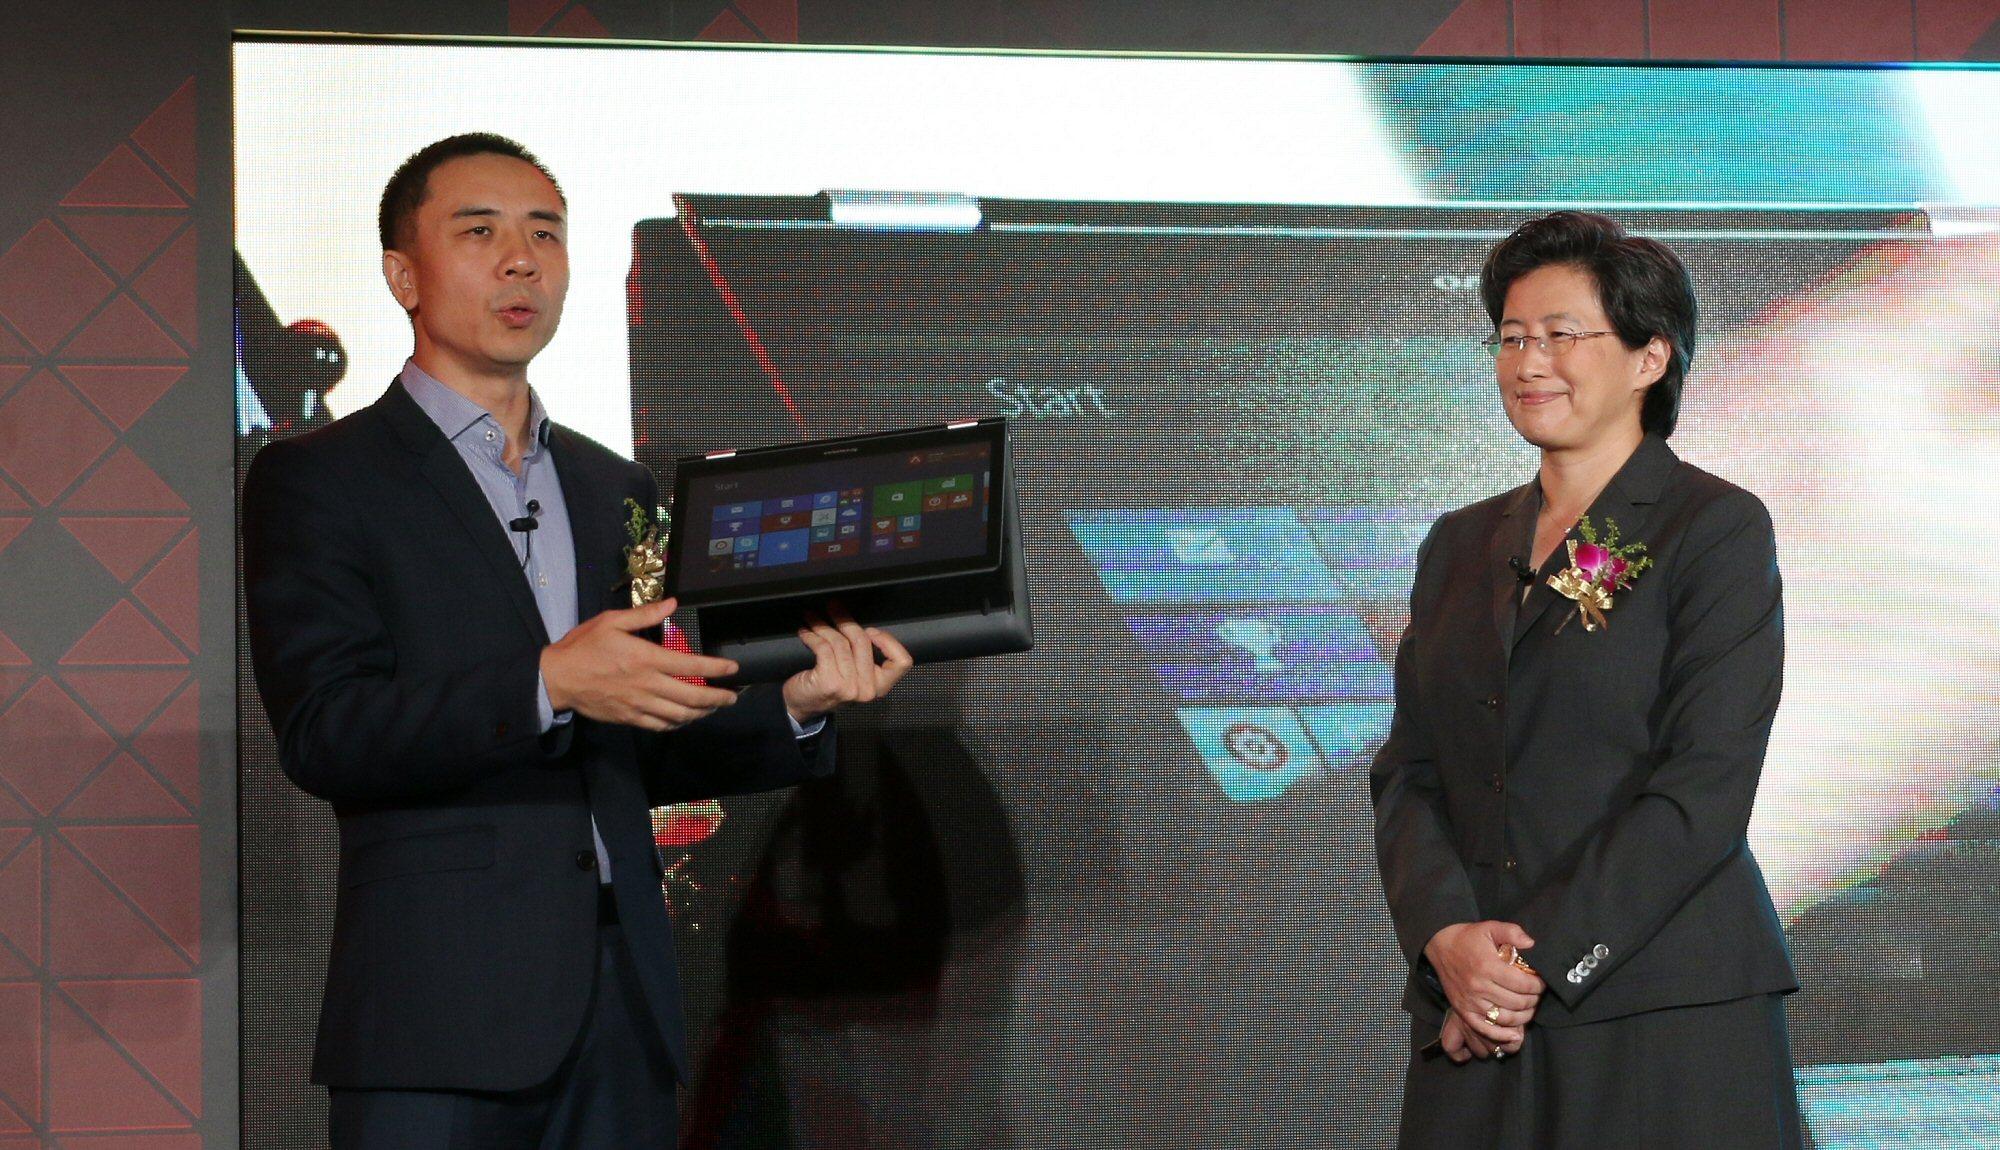 Lenovos Bai Peng viser frem en bærbar PC med Carrizo-prosessor. Foto: Vegar Jansen, Tek.no